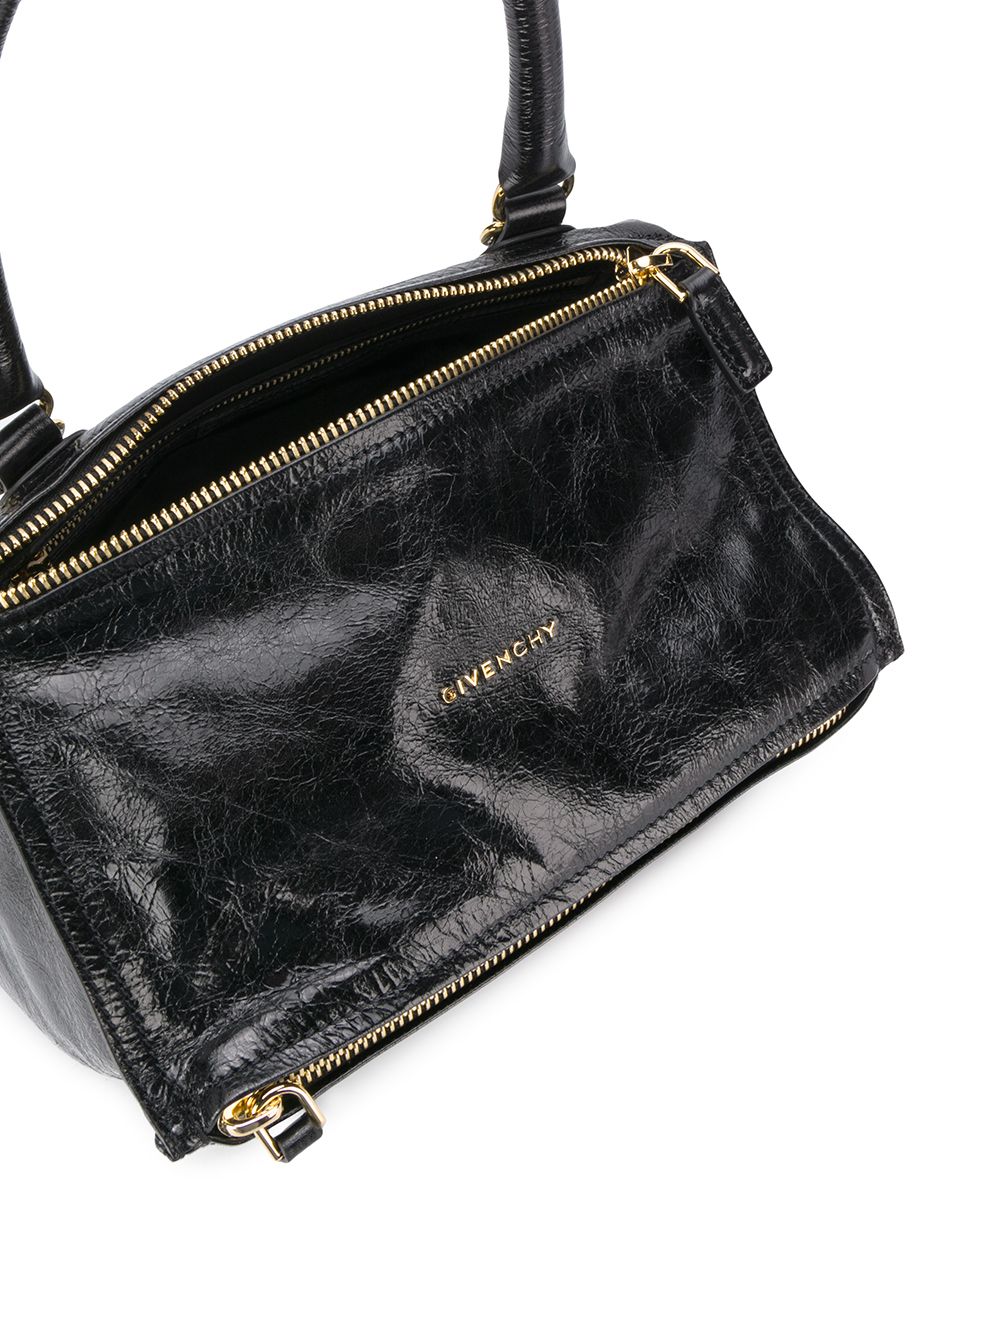 фото Givenchy сумка pandora с верхней ручкой